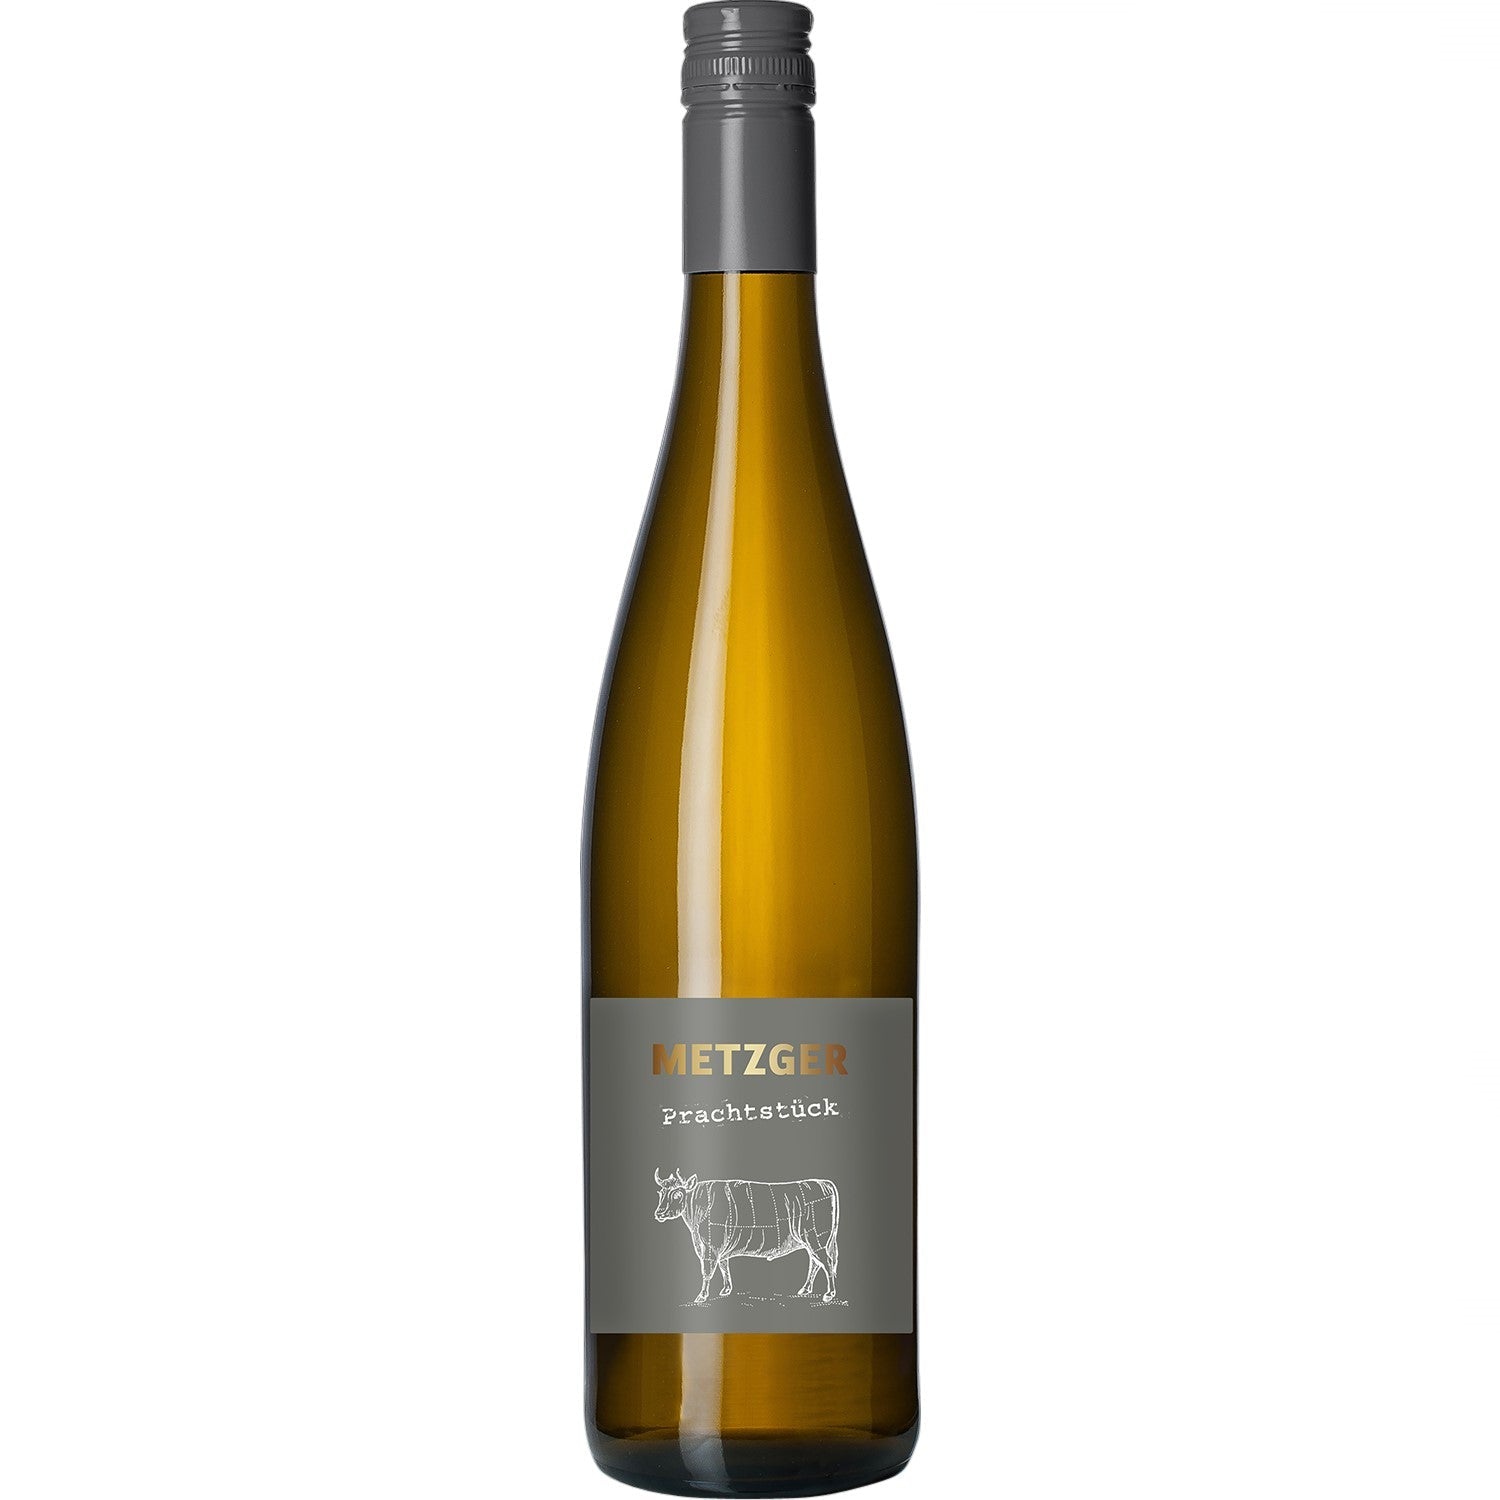 Metzger Prachtstück Weißburgunder Chardonnay Weißwein Wein trocken KuhbA (6 x 0.75l) - Versanel -